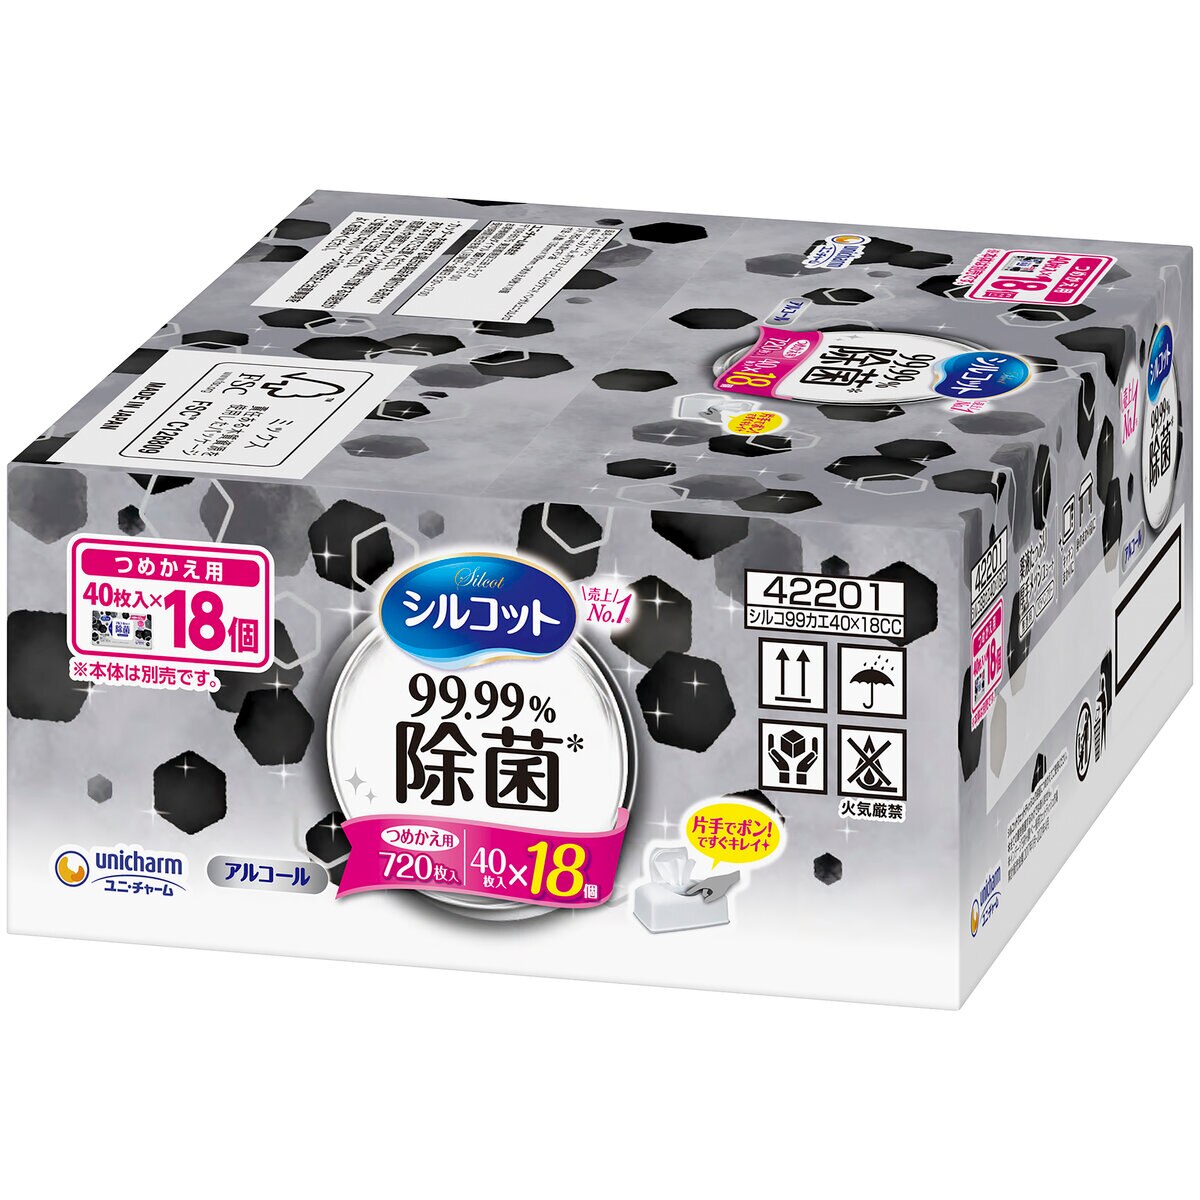 シルコット 99.99%除菌ウエットティッシュ 詰め替え 40枚 x 18個パック | Costco Japan